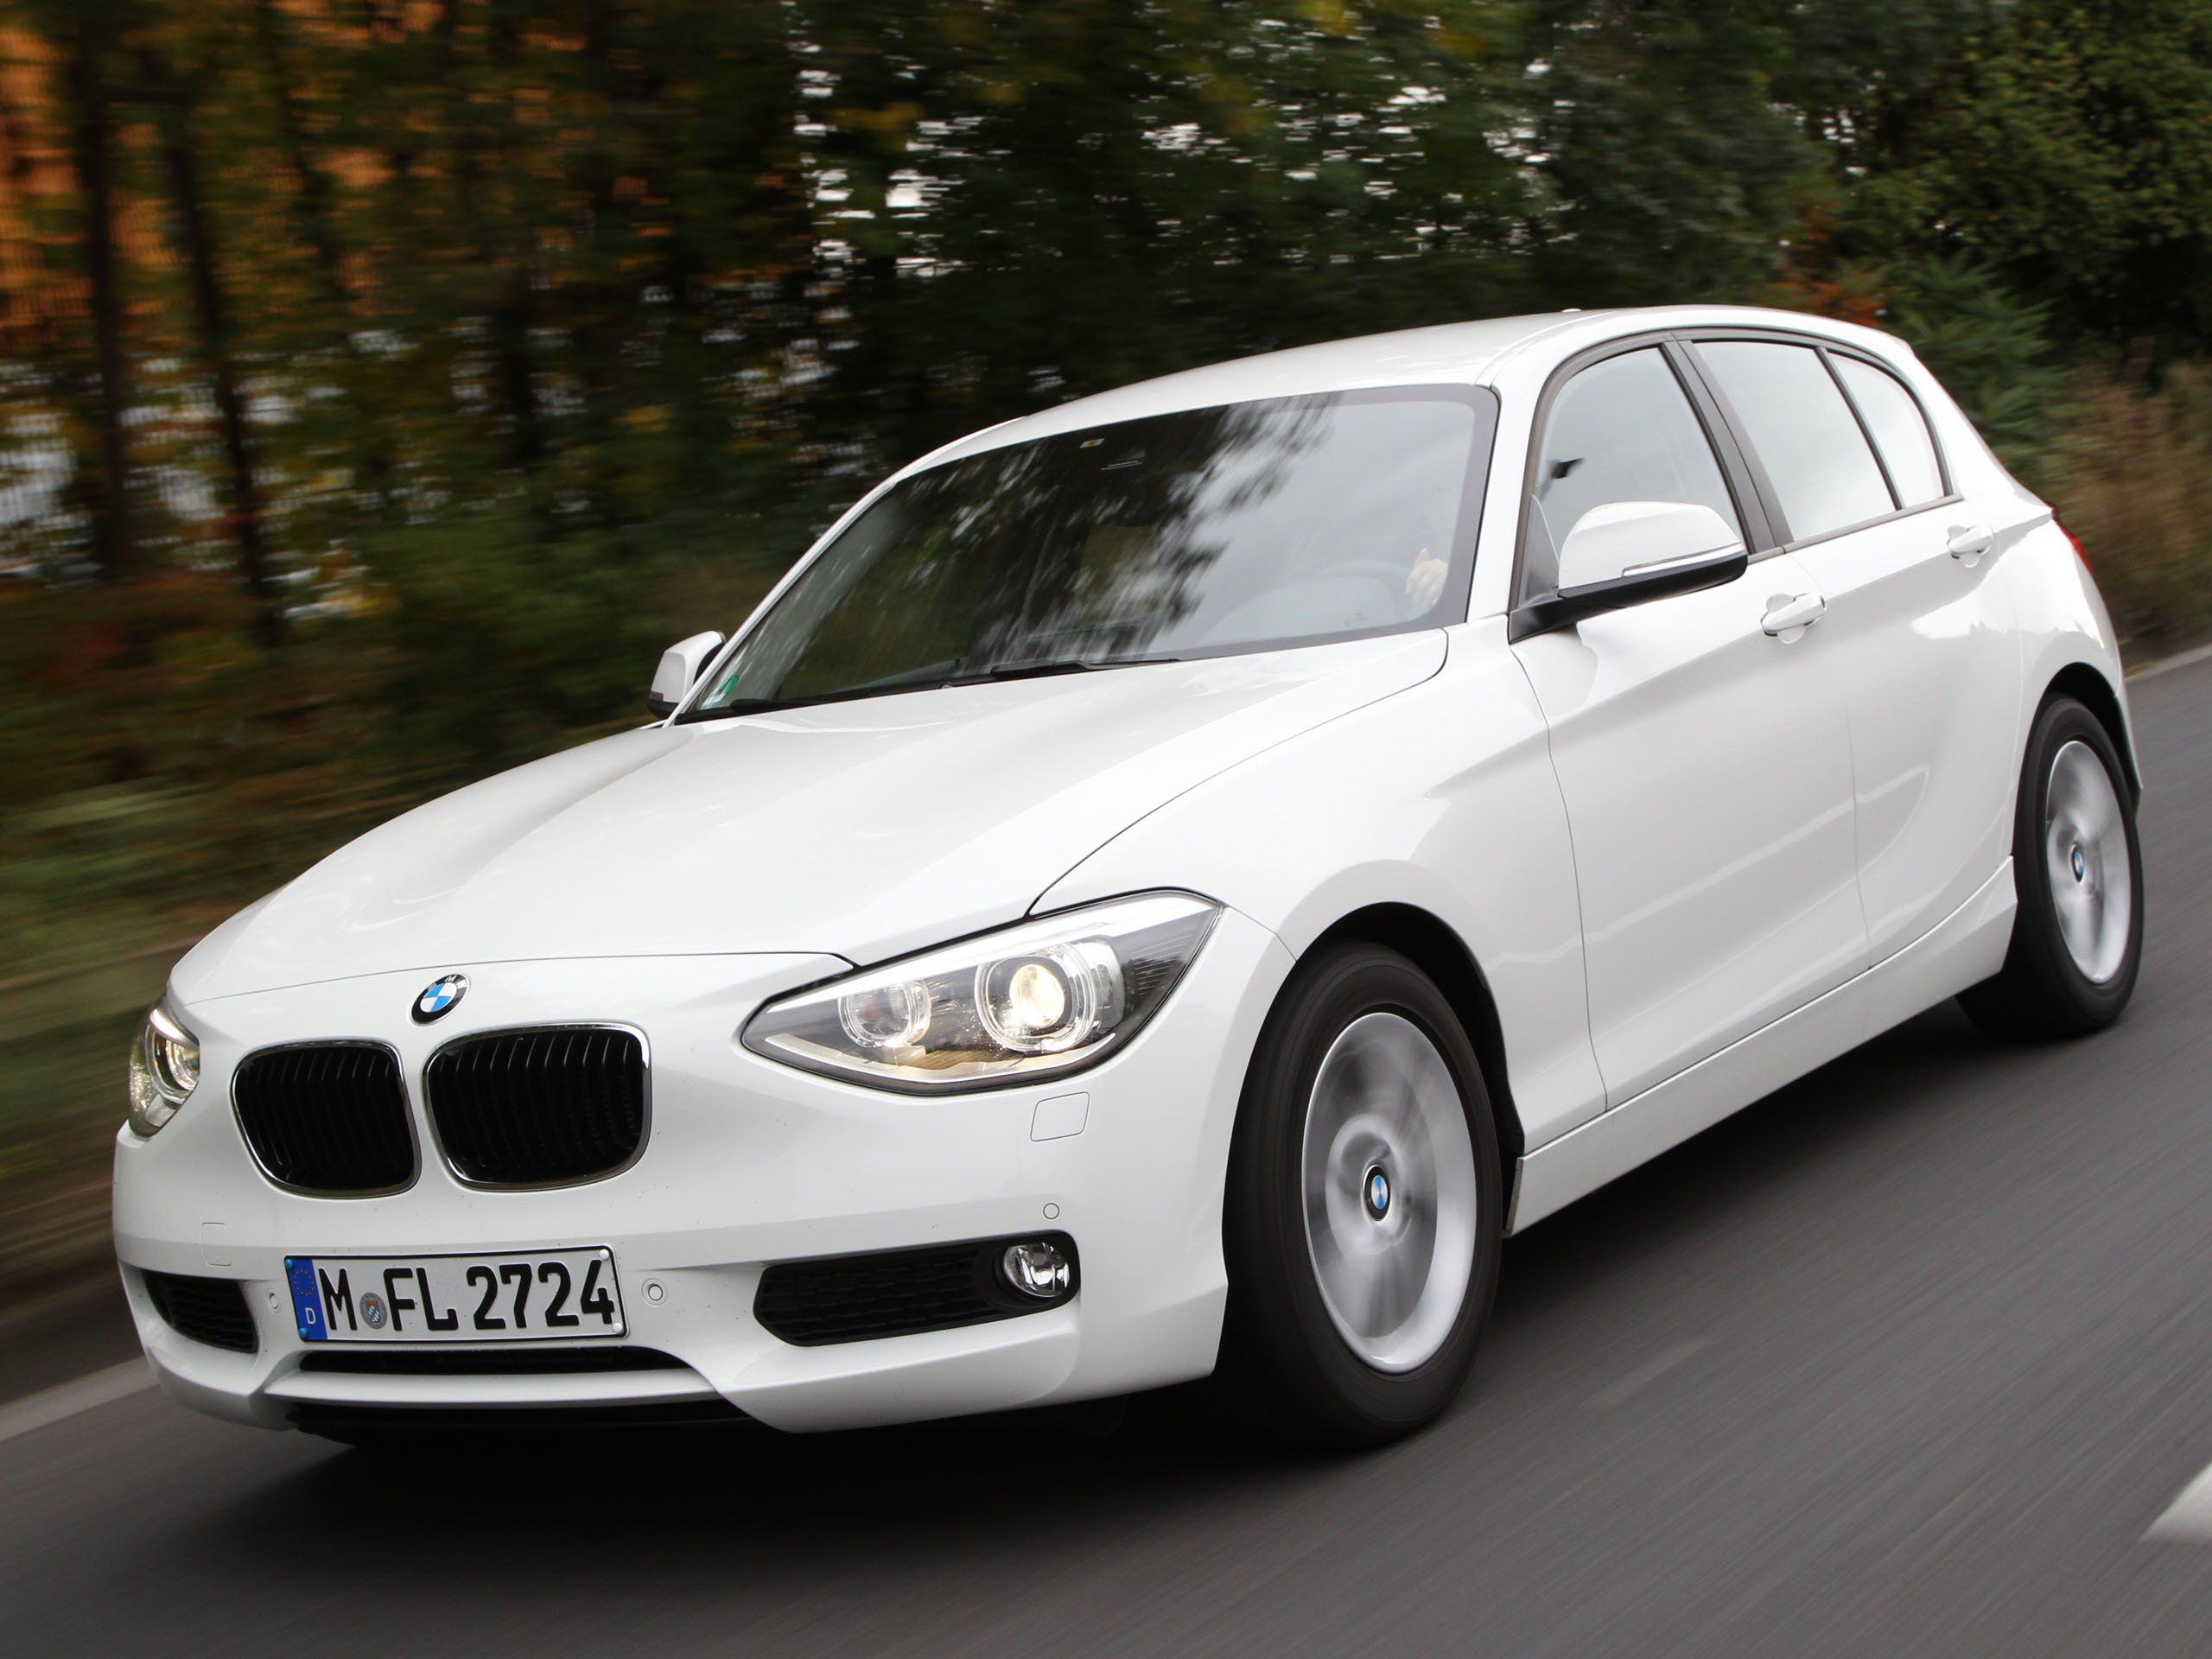 https://www.autozeitung.de/assets/gallery_images/2012/10/Bilder-BMW-114i-2012-003.jpg